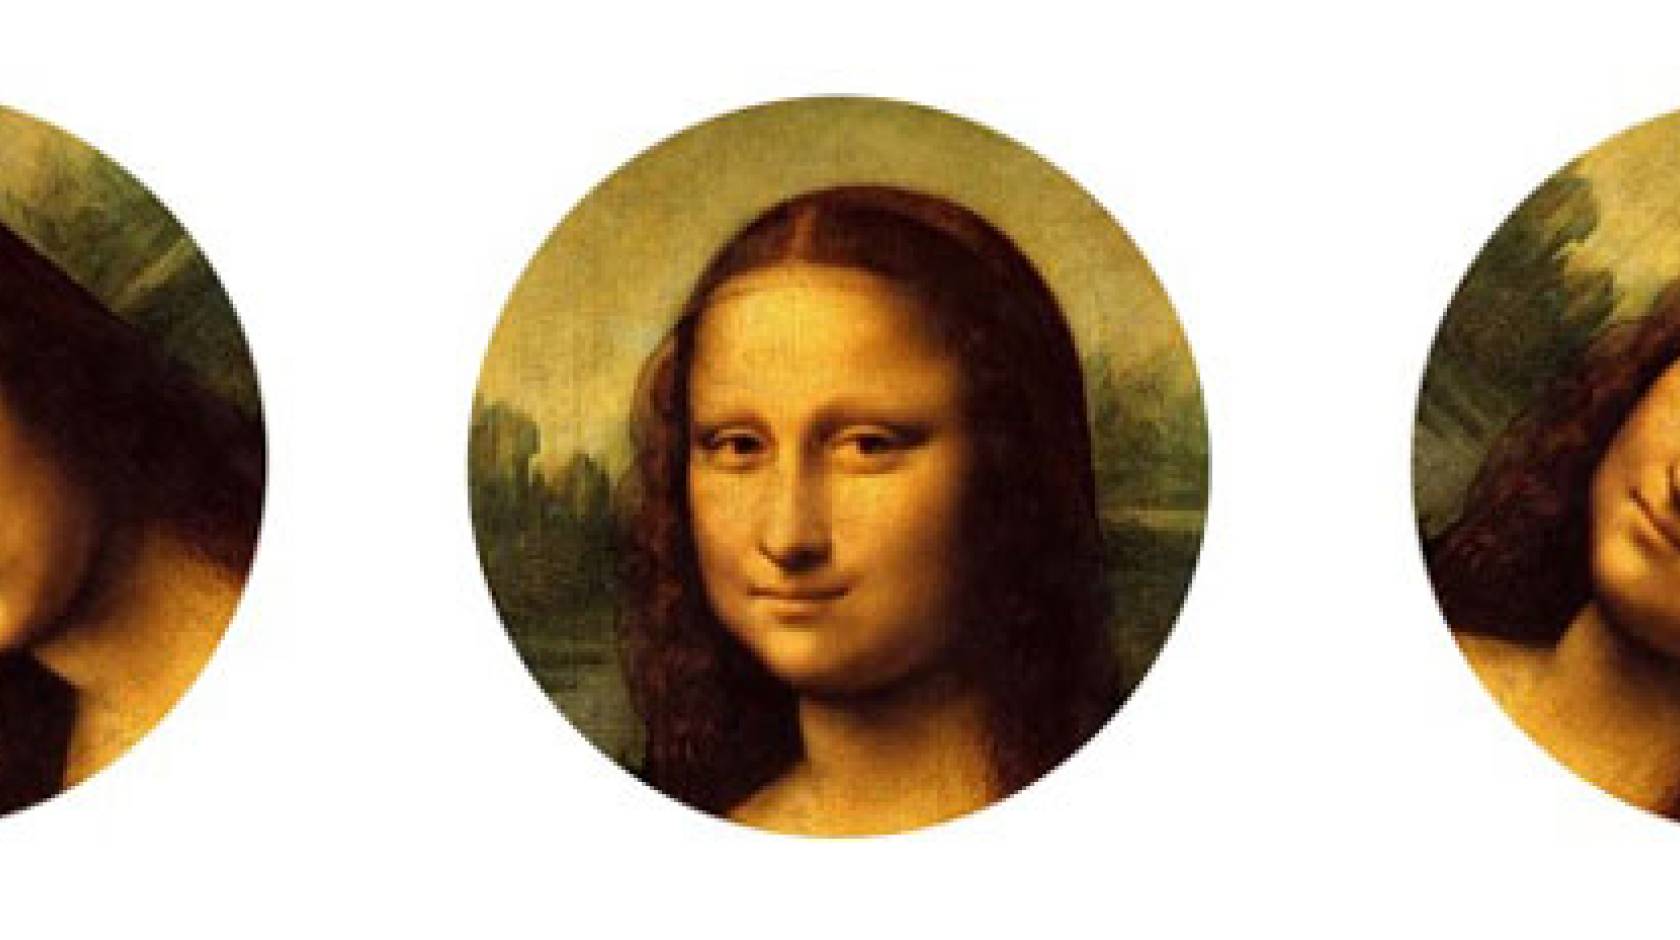 Mona lisa face at 3 angles